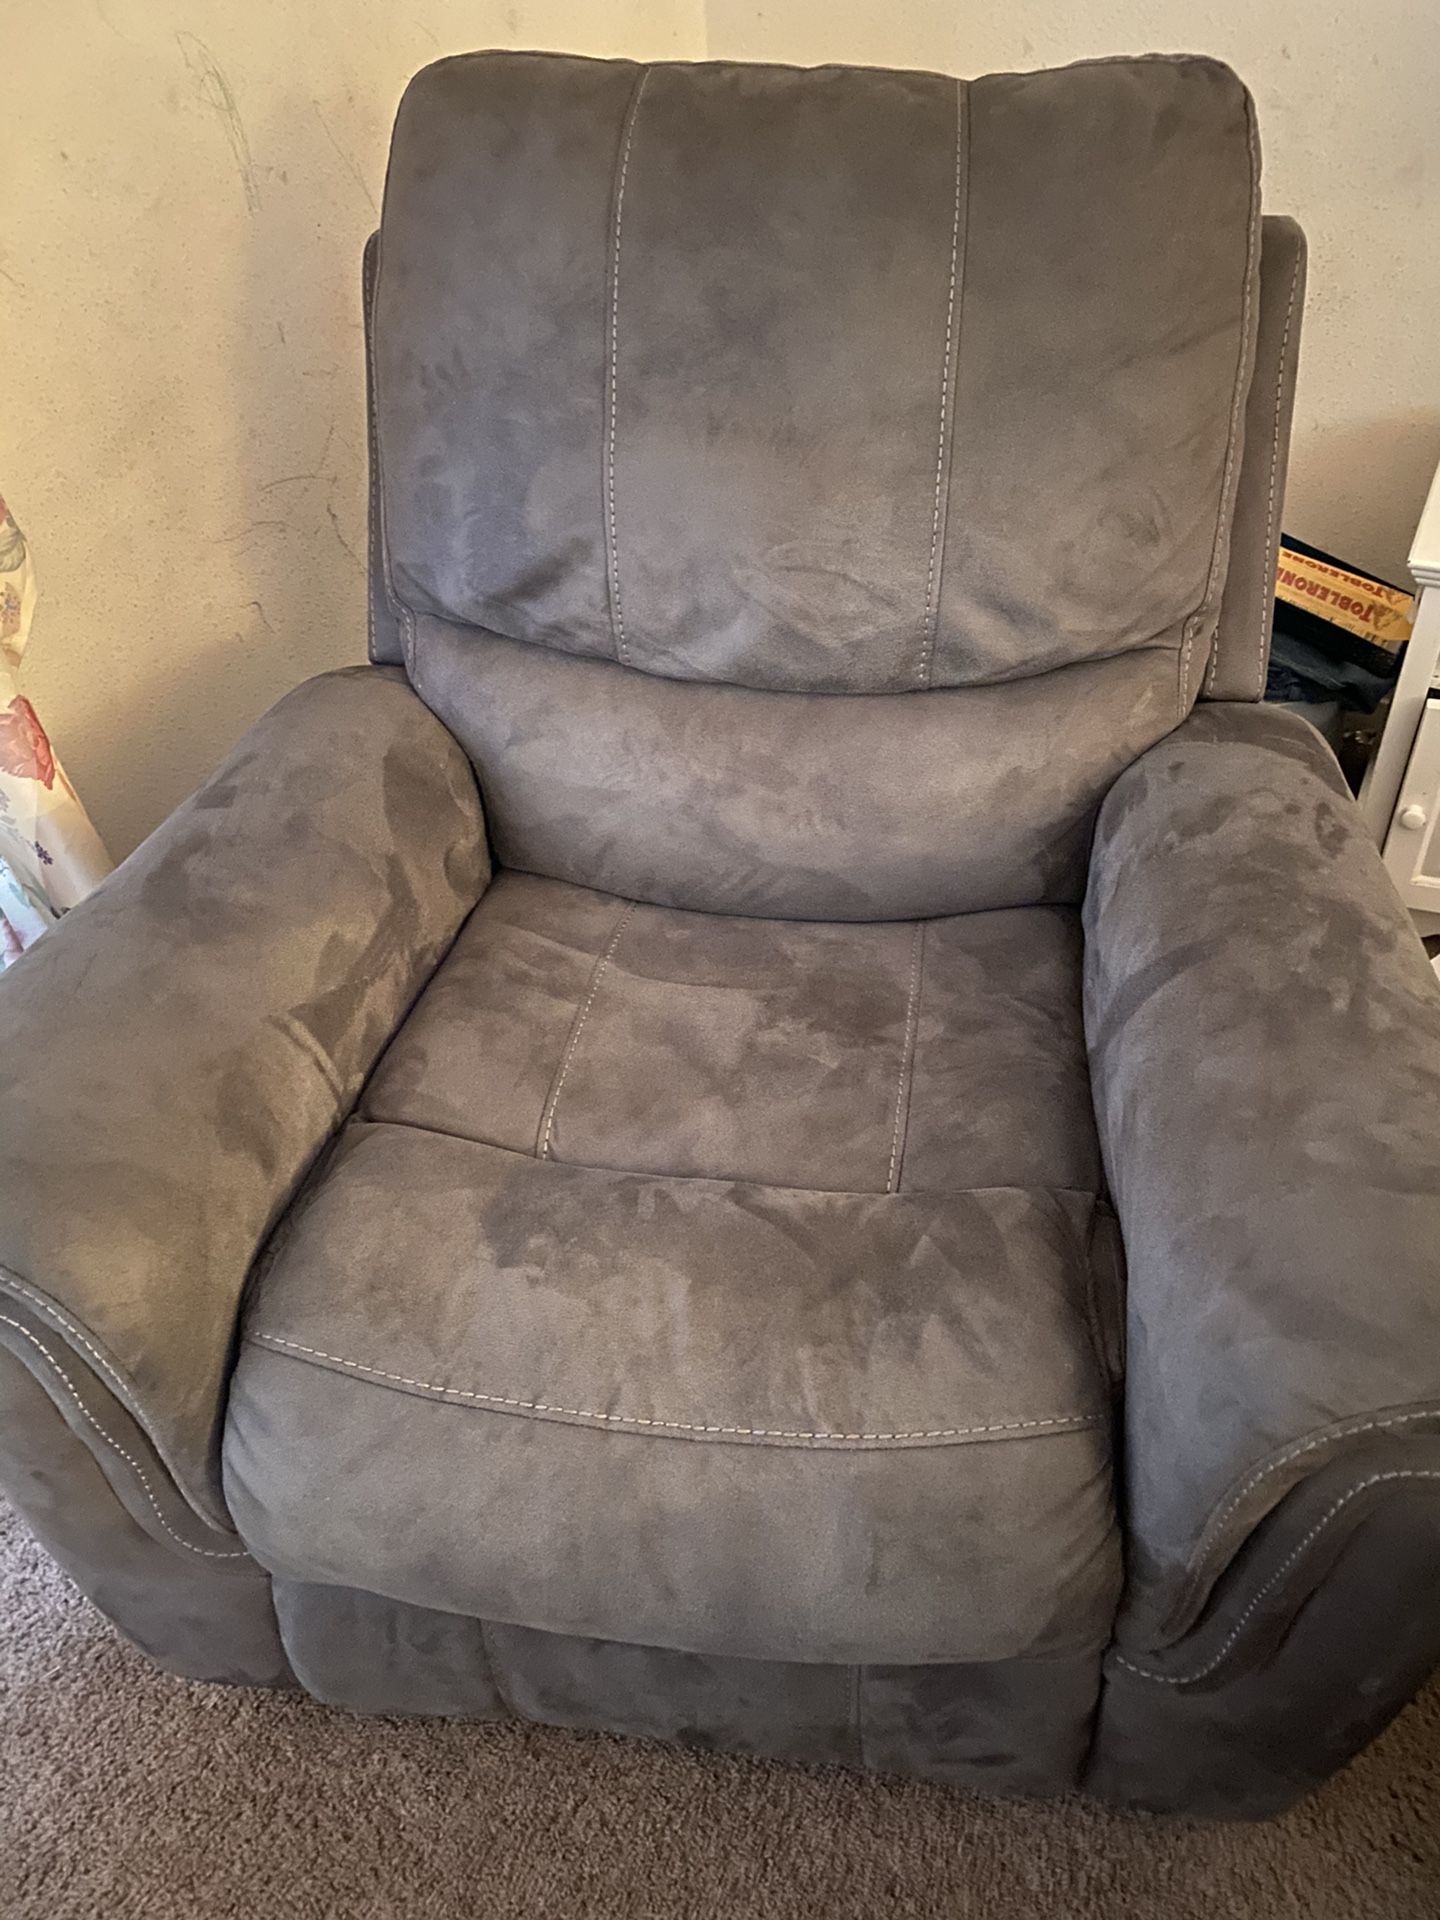 Gray recliner chair